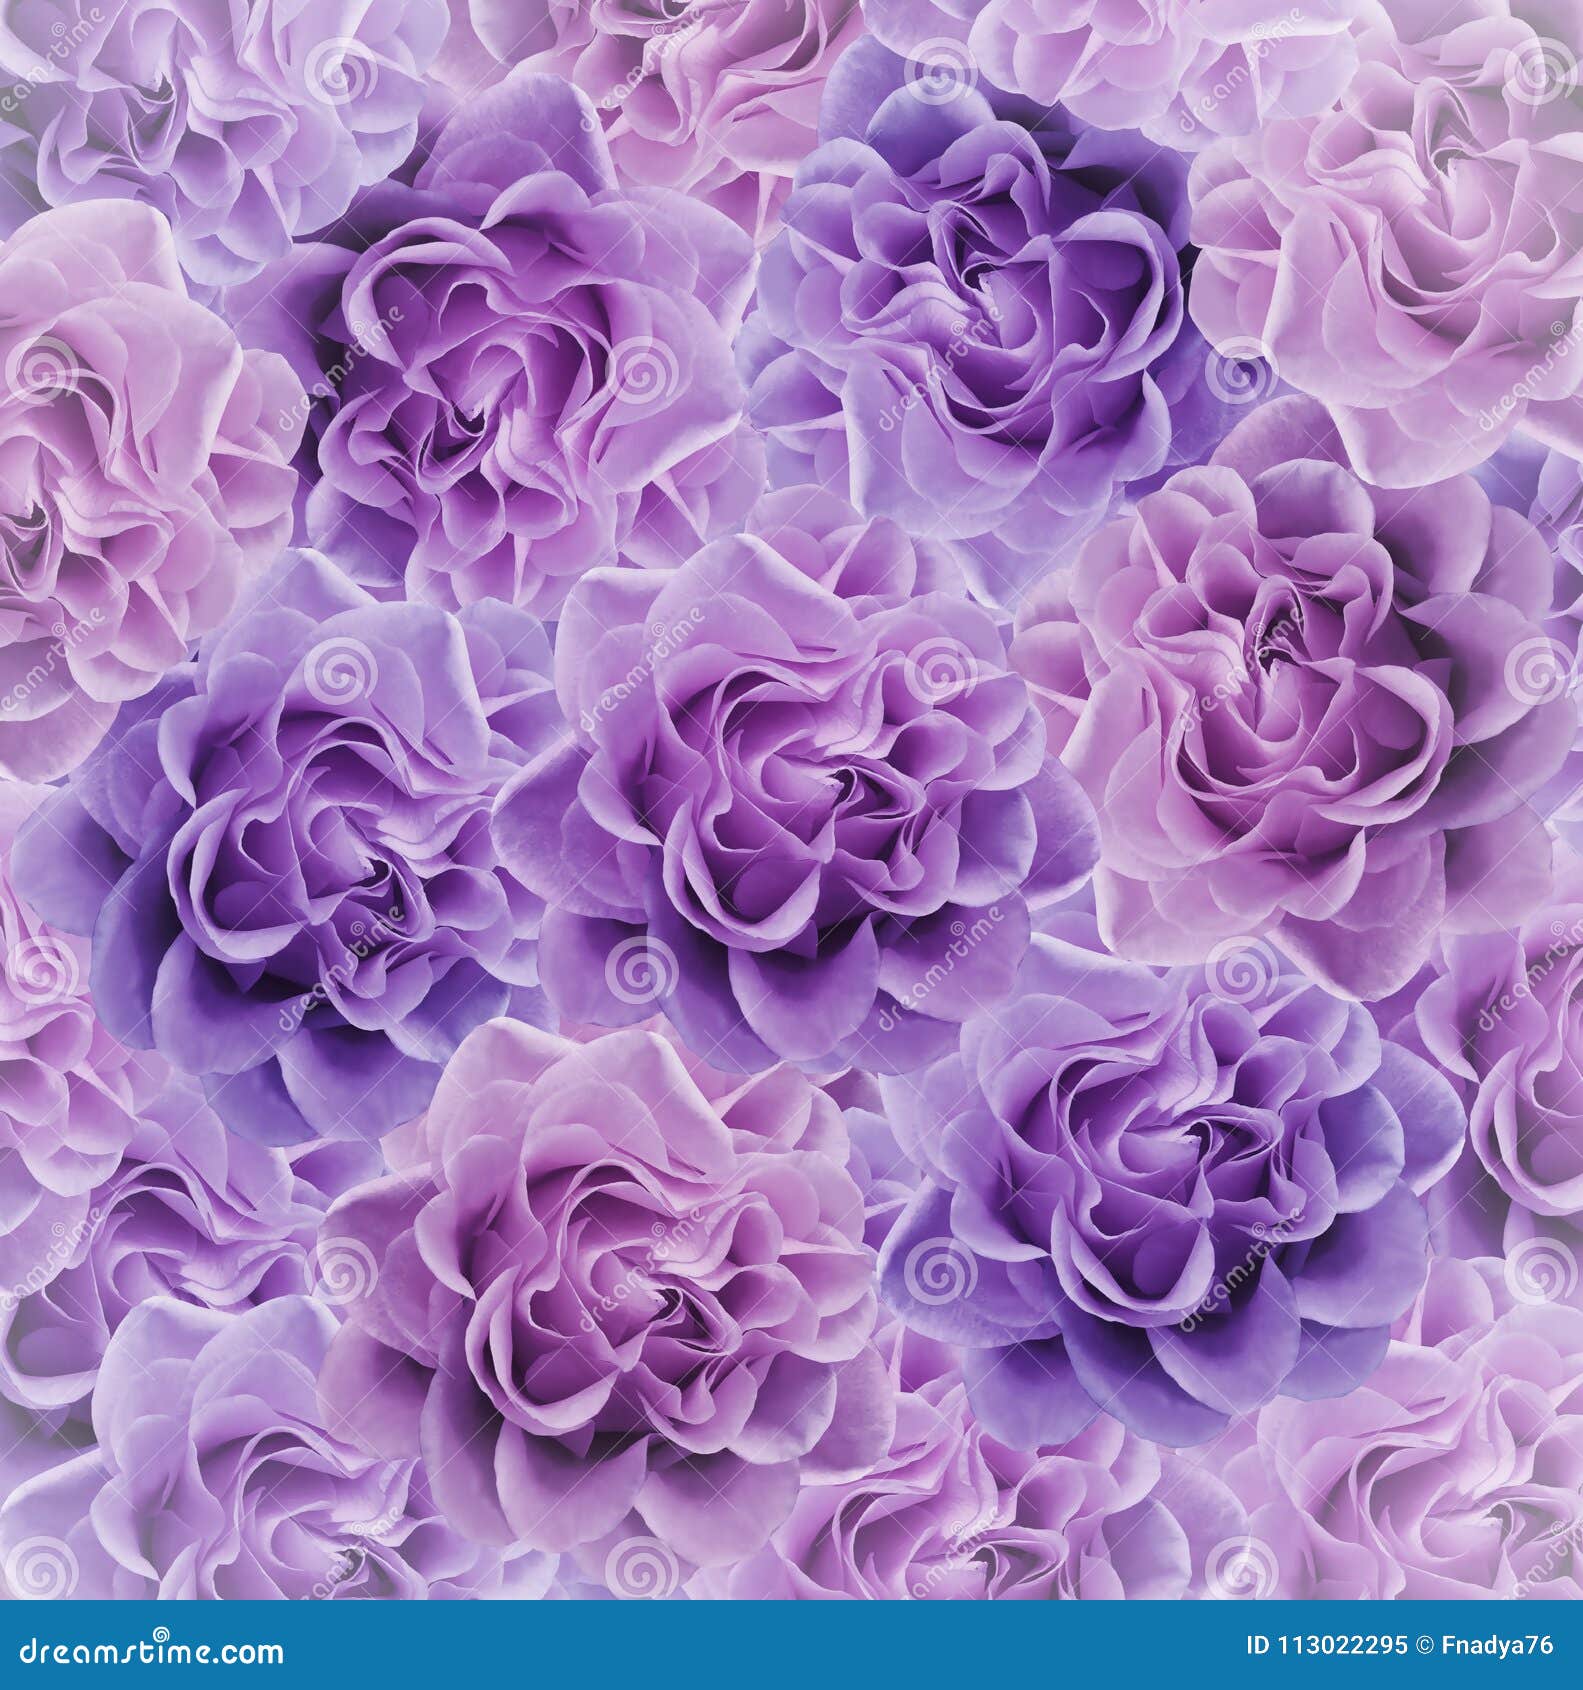 Beau Fond Rose-violet Floral Composition De Fleur Bouquet Des Fleurs Des Roses  Roses Plan Rapproché Image stock - Image du sort, horizontal: 113022295